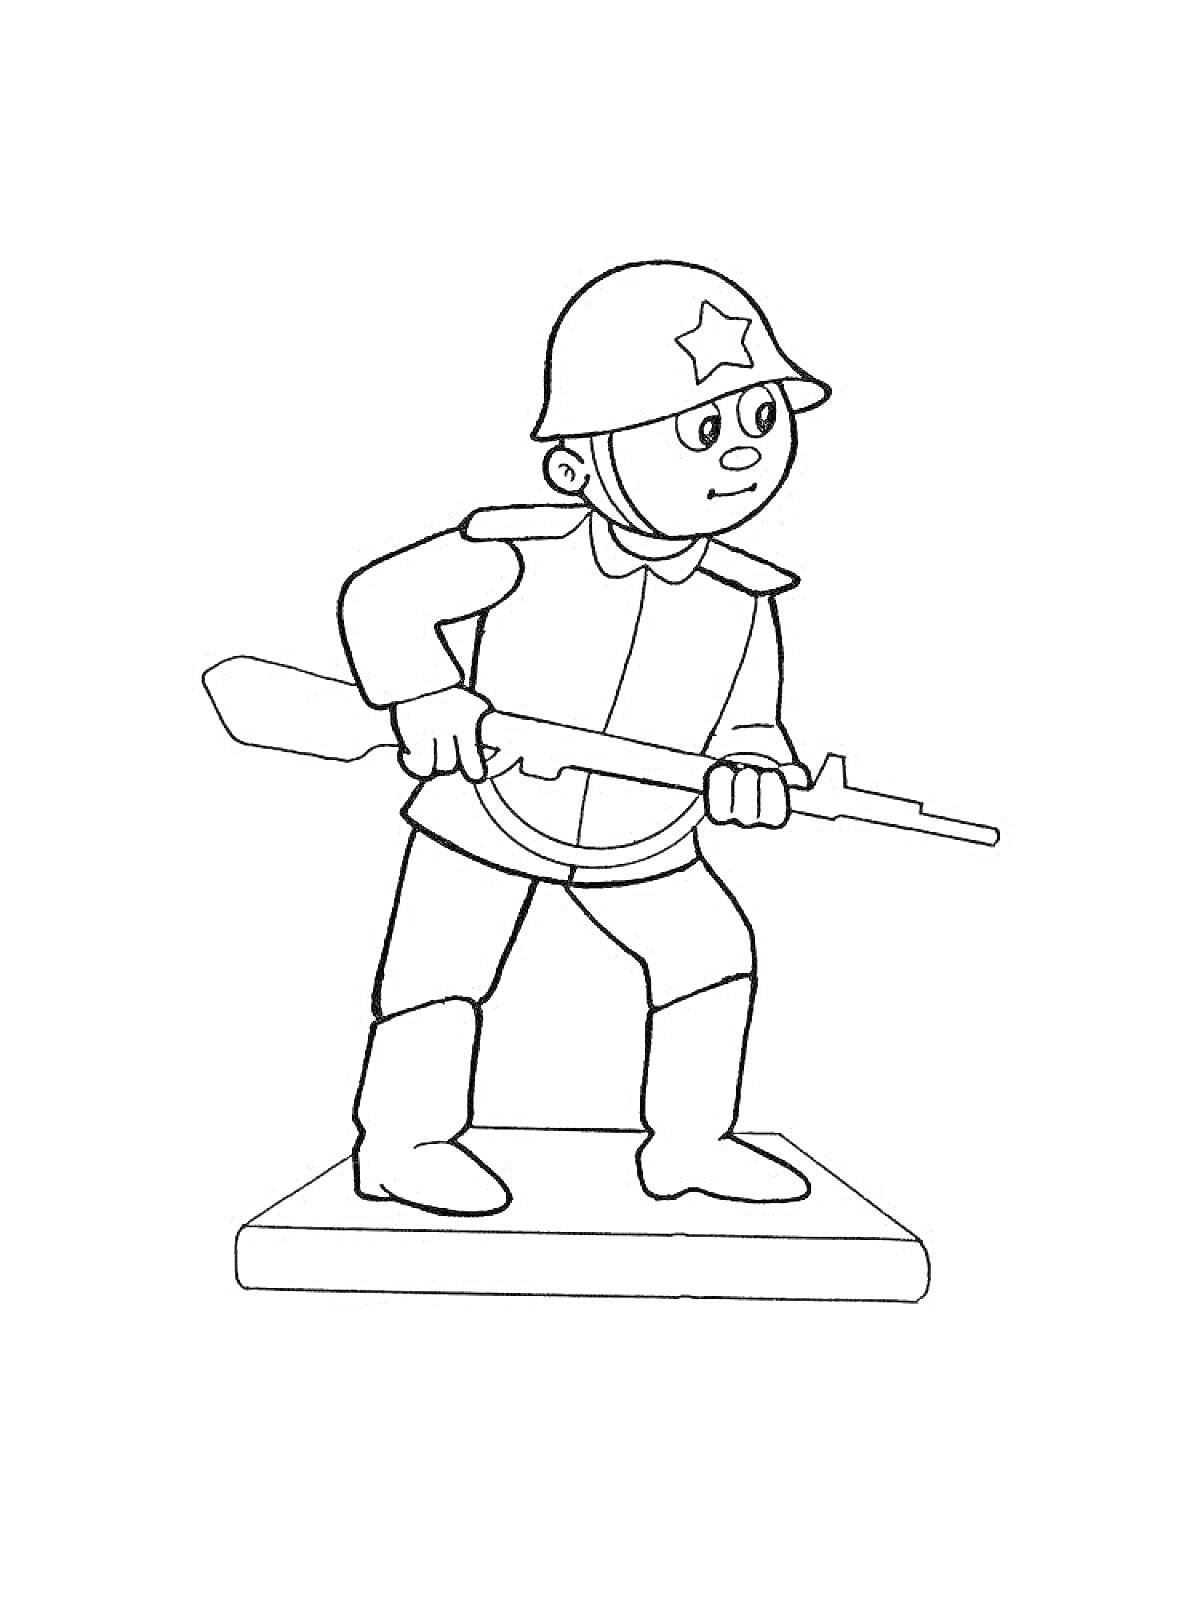 Раскраска Солдатик в каске со звездой, с ружьем в руках, стоящий на платформе